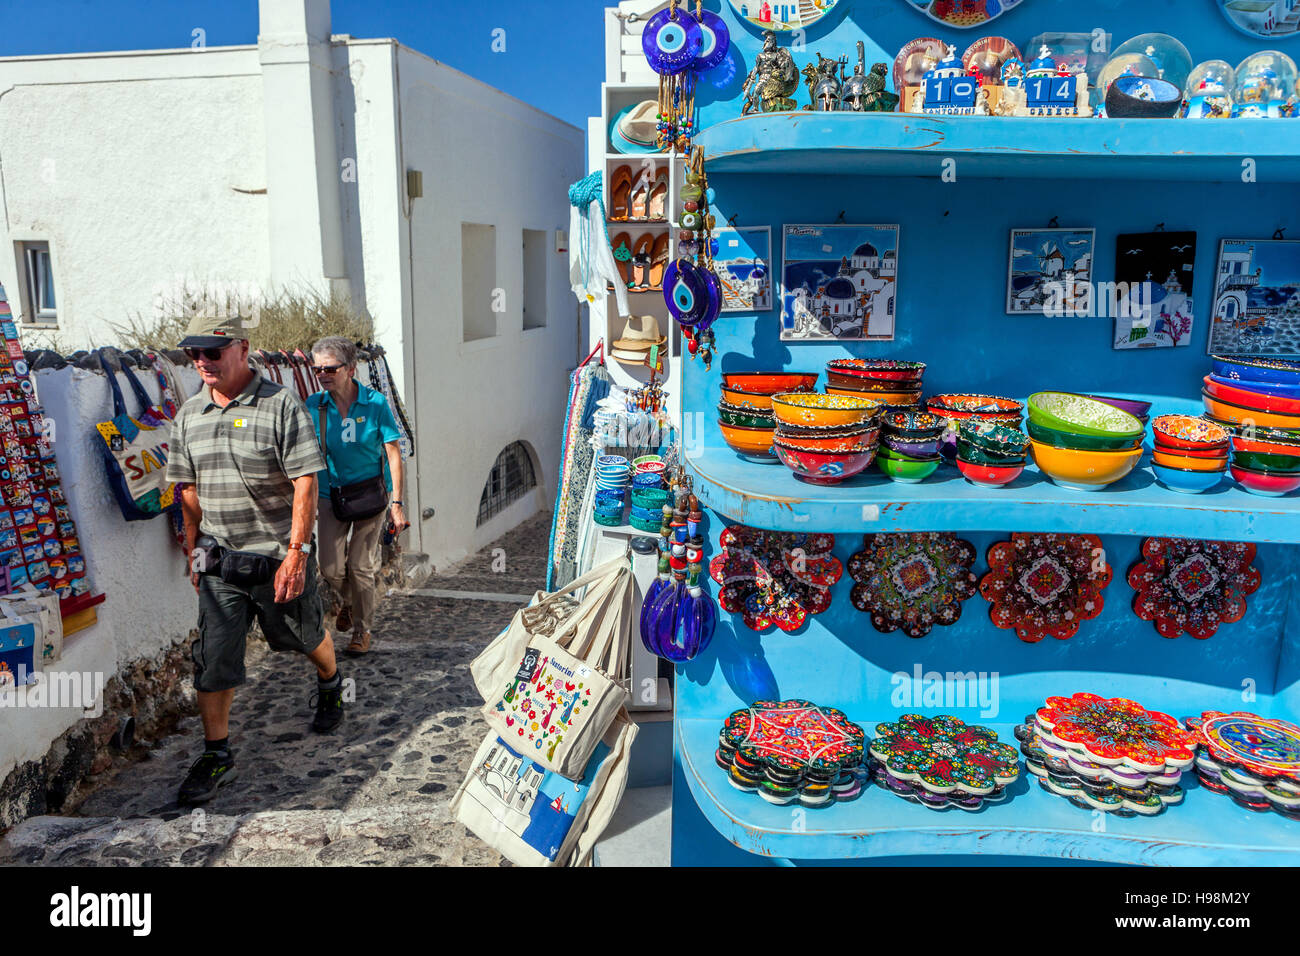 Boutique de souvenirs avec produits traditionnels grecs Oia Santorini rue grecque Îles Grèce rues Banque D'Images